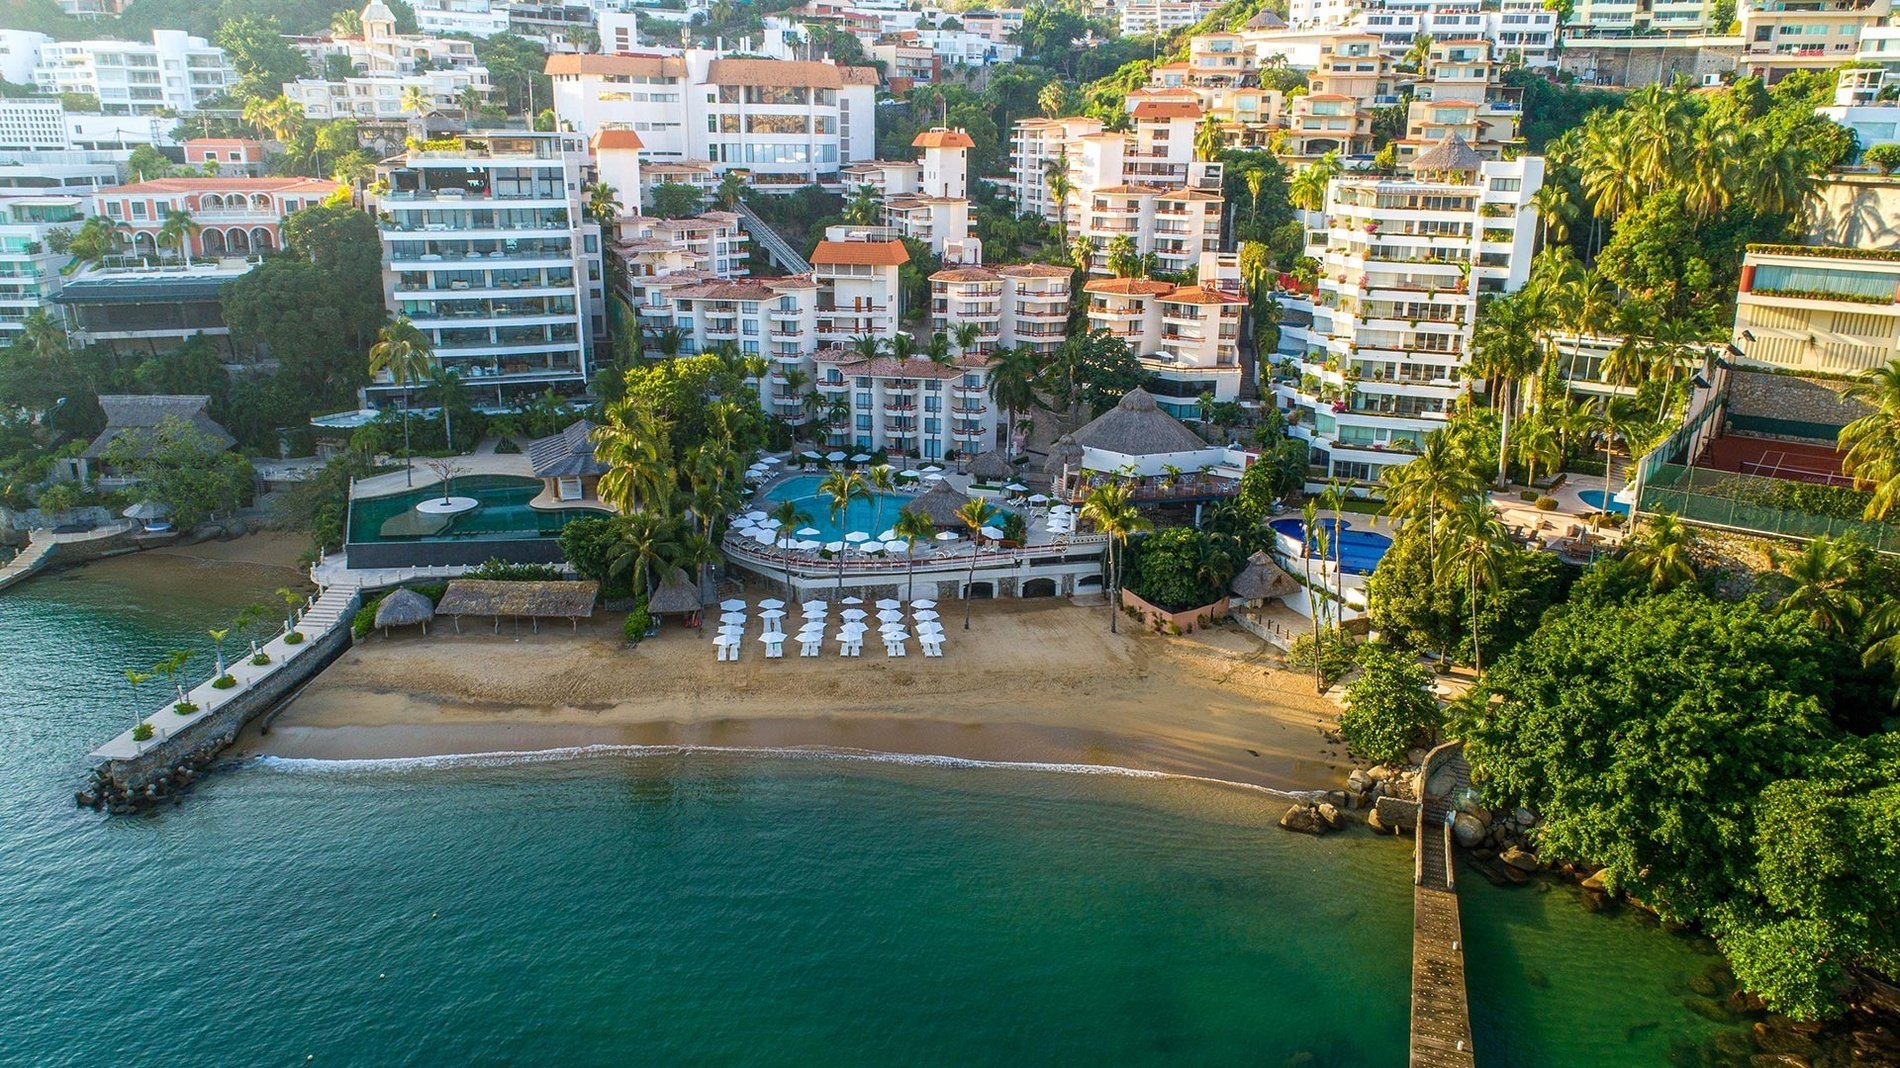 Panorámica del Hotel Park Royal Beach Acapulco, instalaciones, piscina y playa